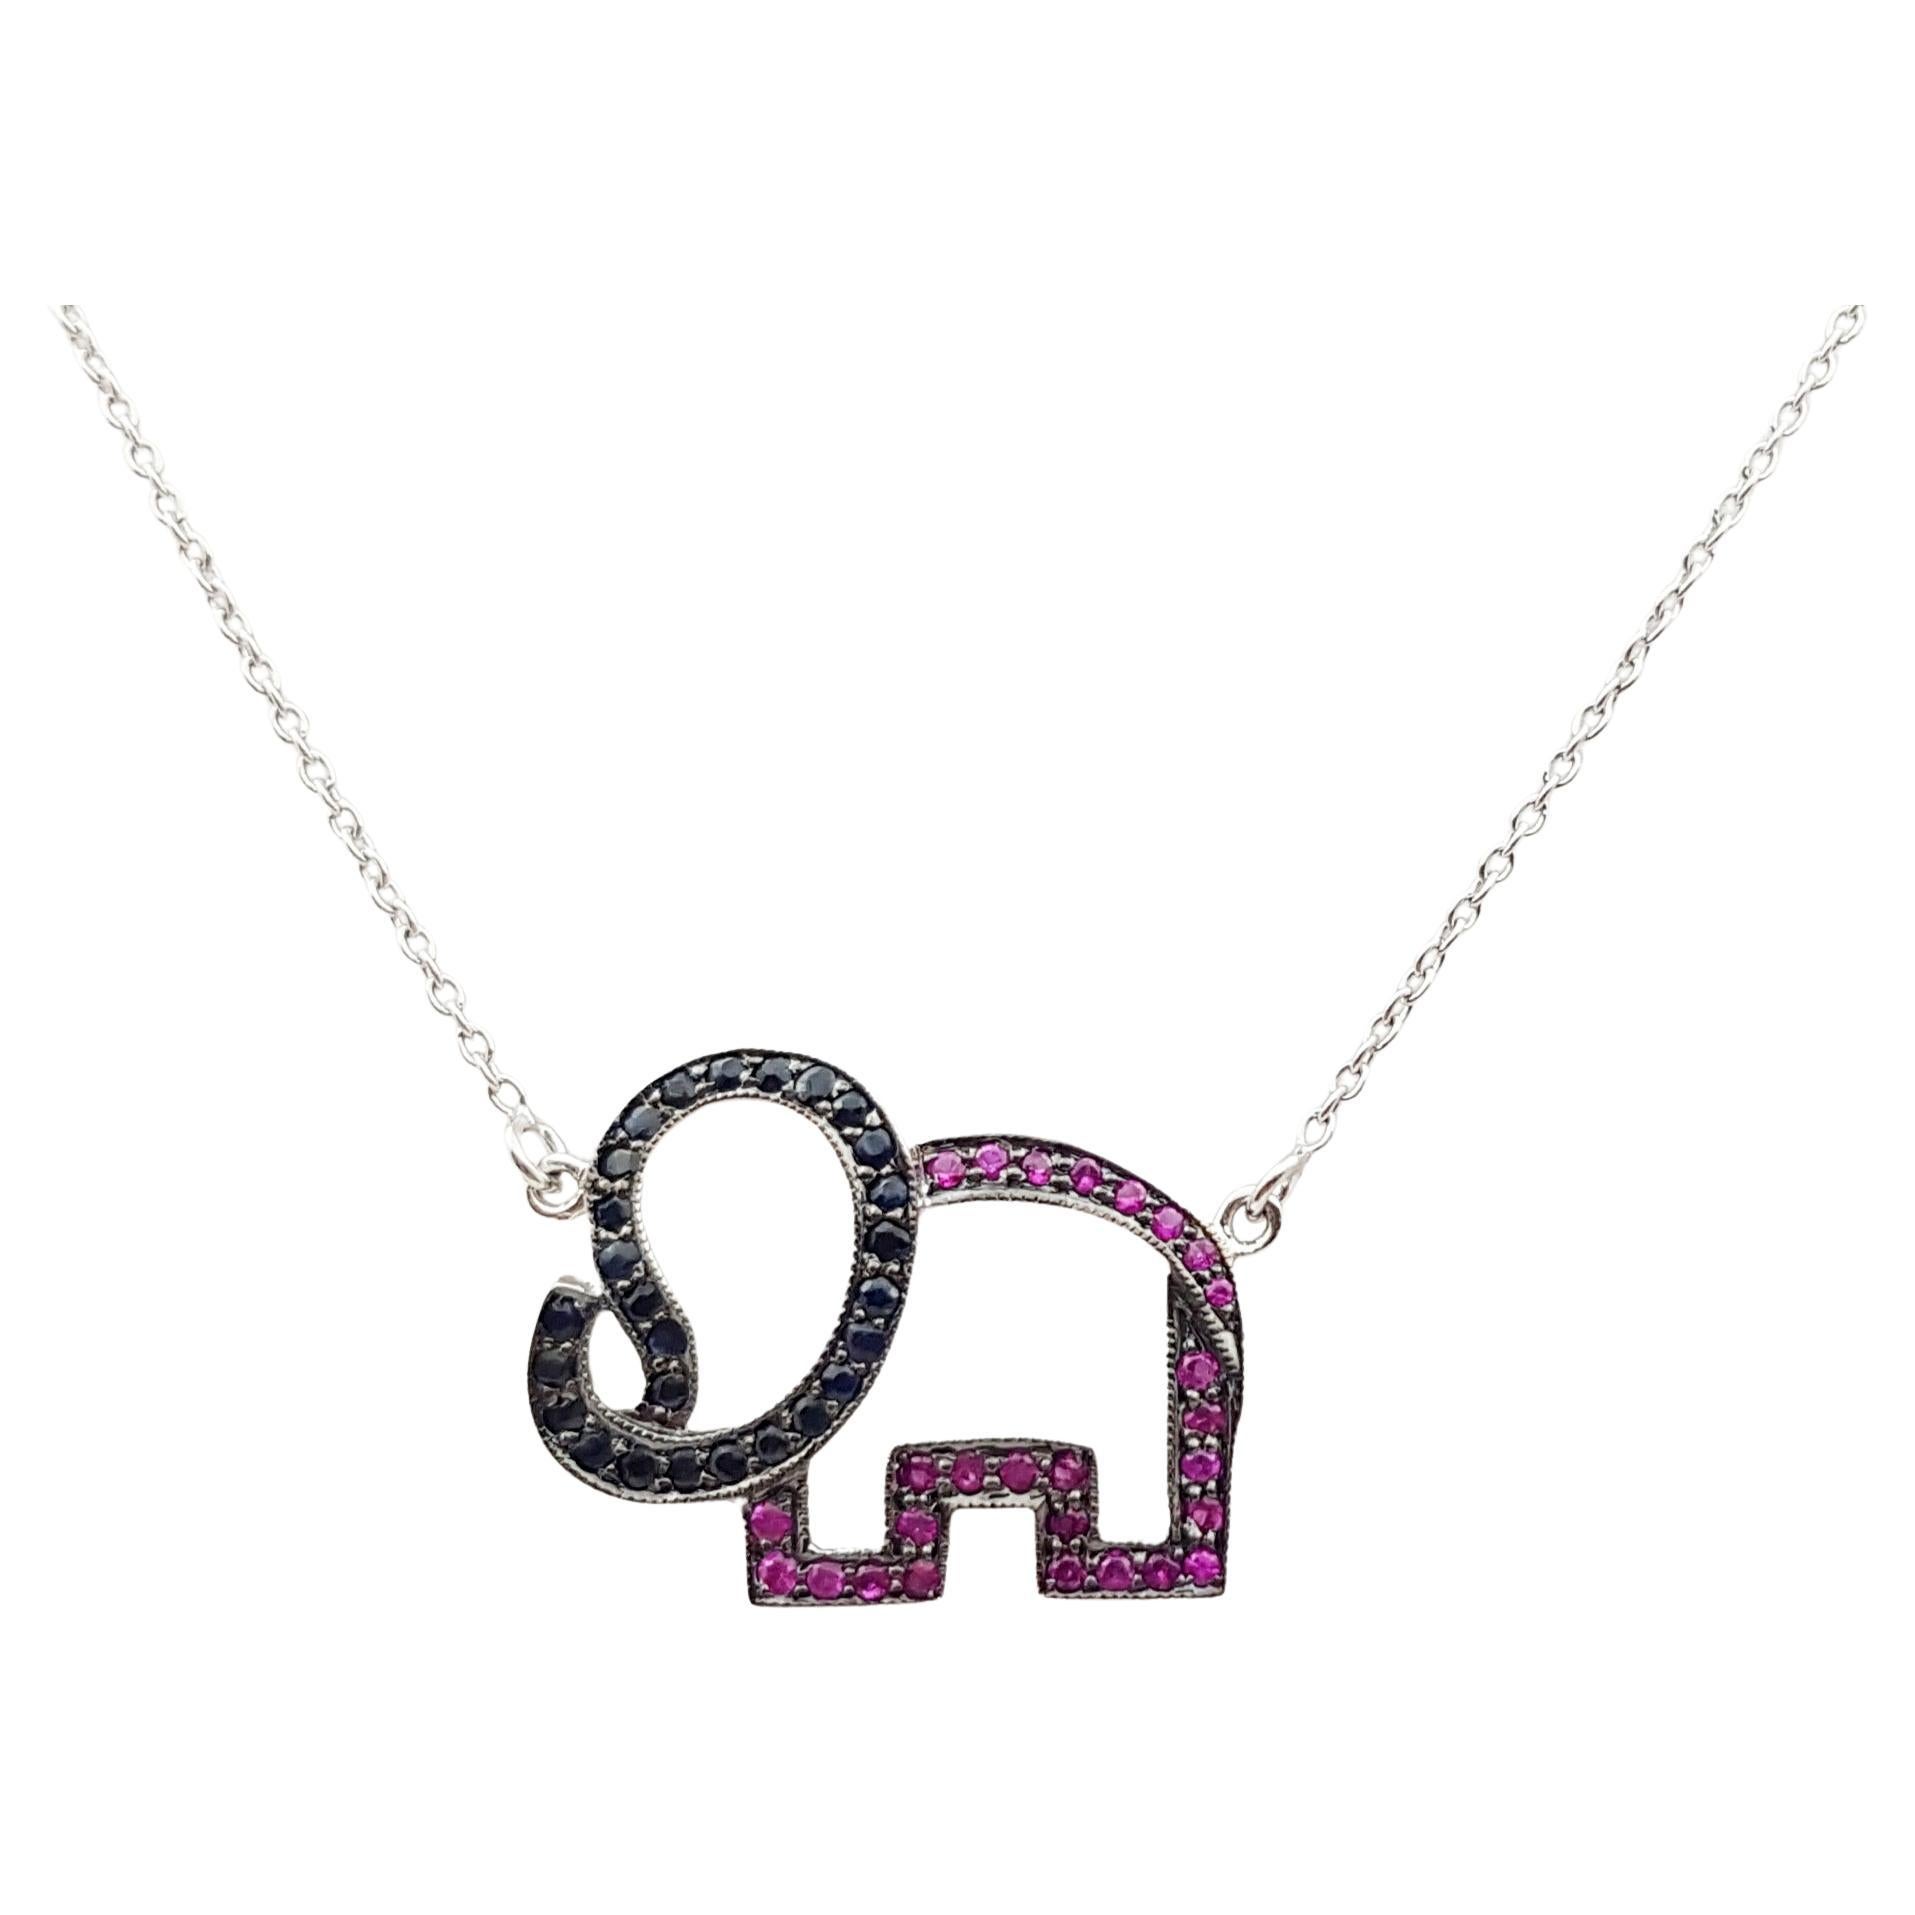 Elefanten-Halskette mit rosa Saphiren und schwarzen Saphiren in Silberfassung